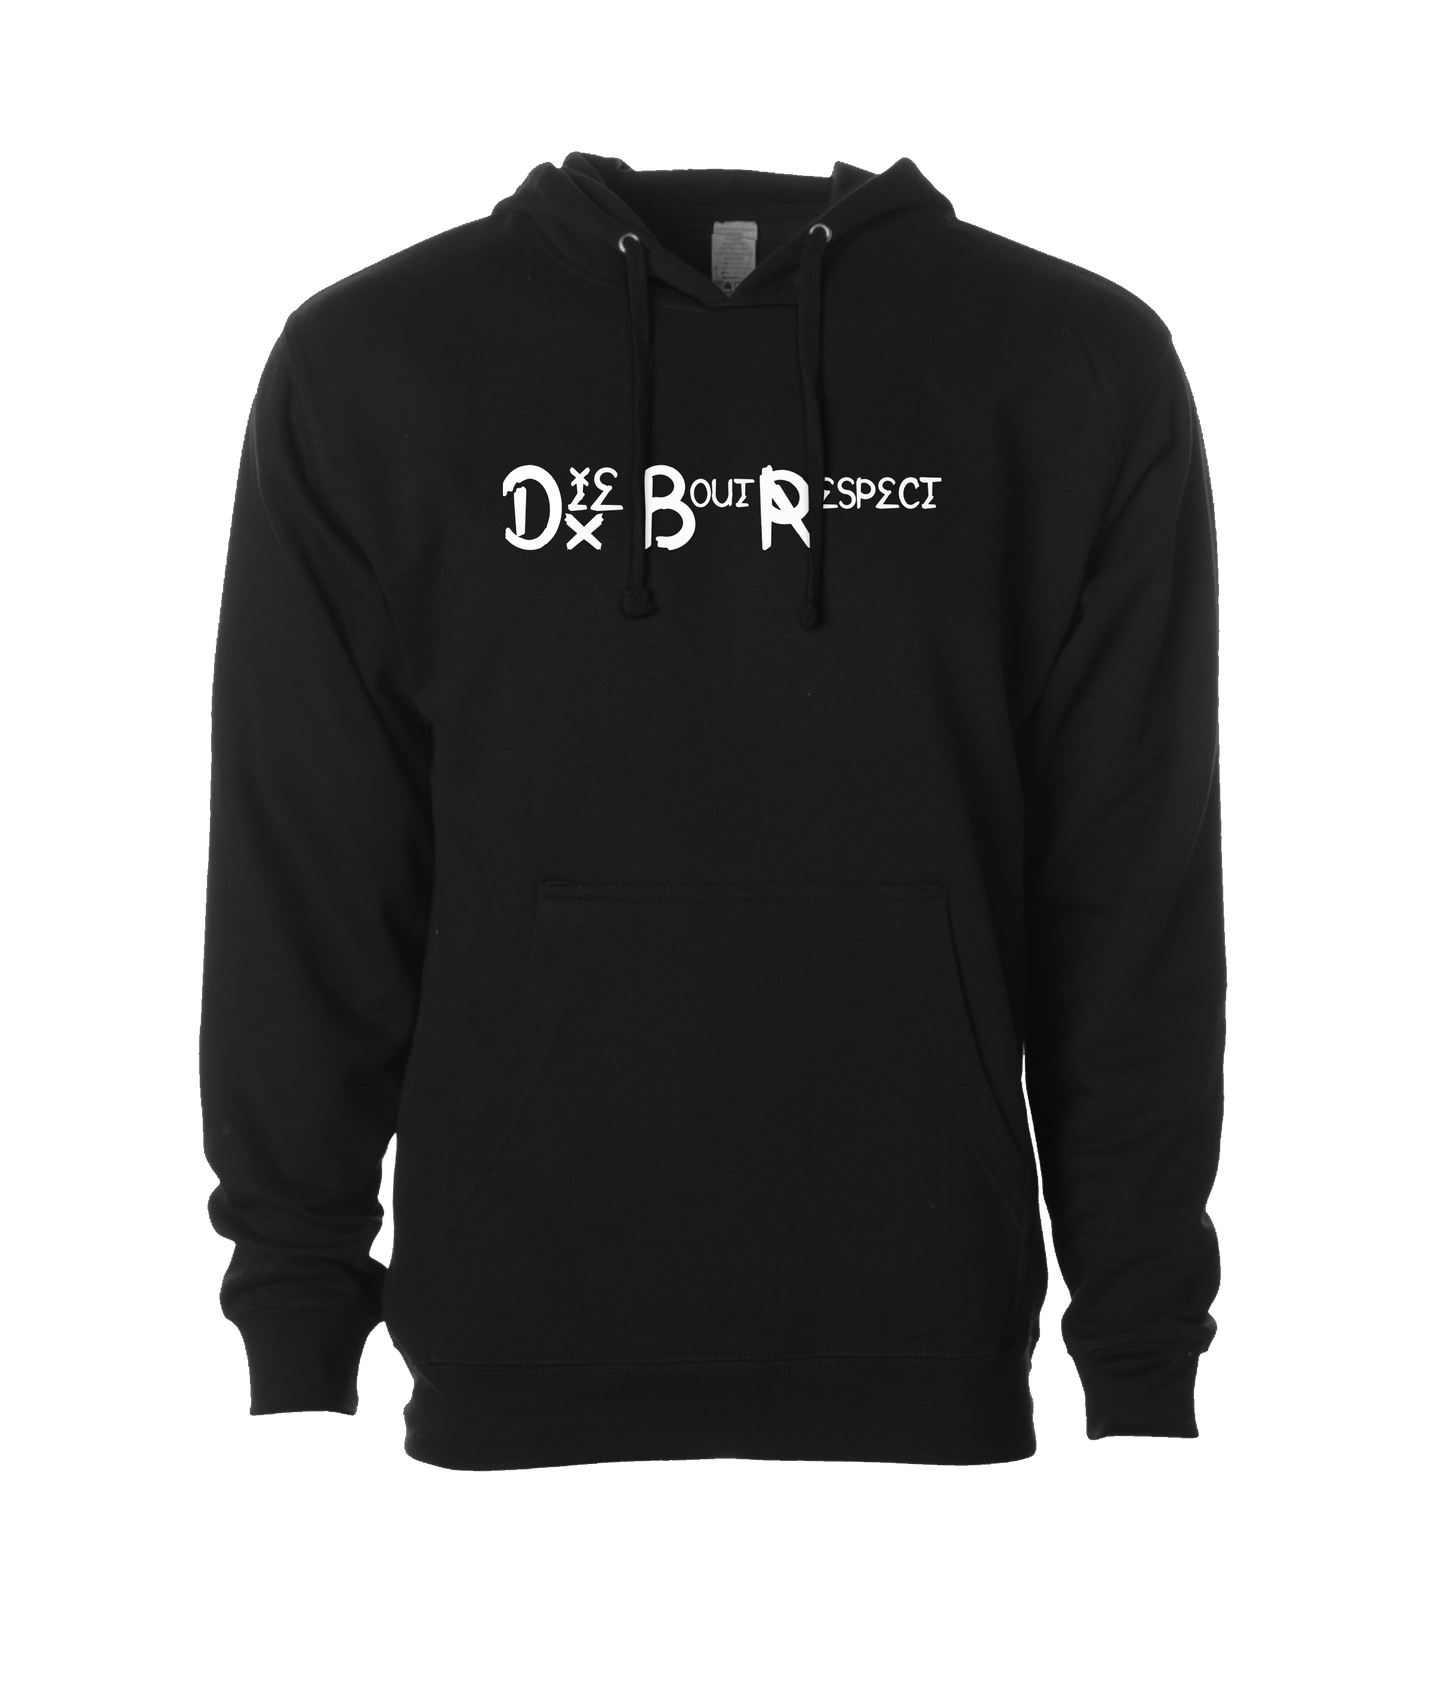 DBR - Die Bout Respect - Black Hoodie